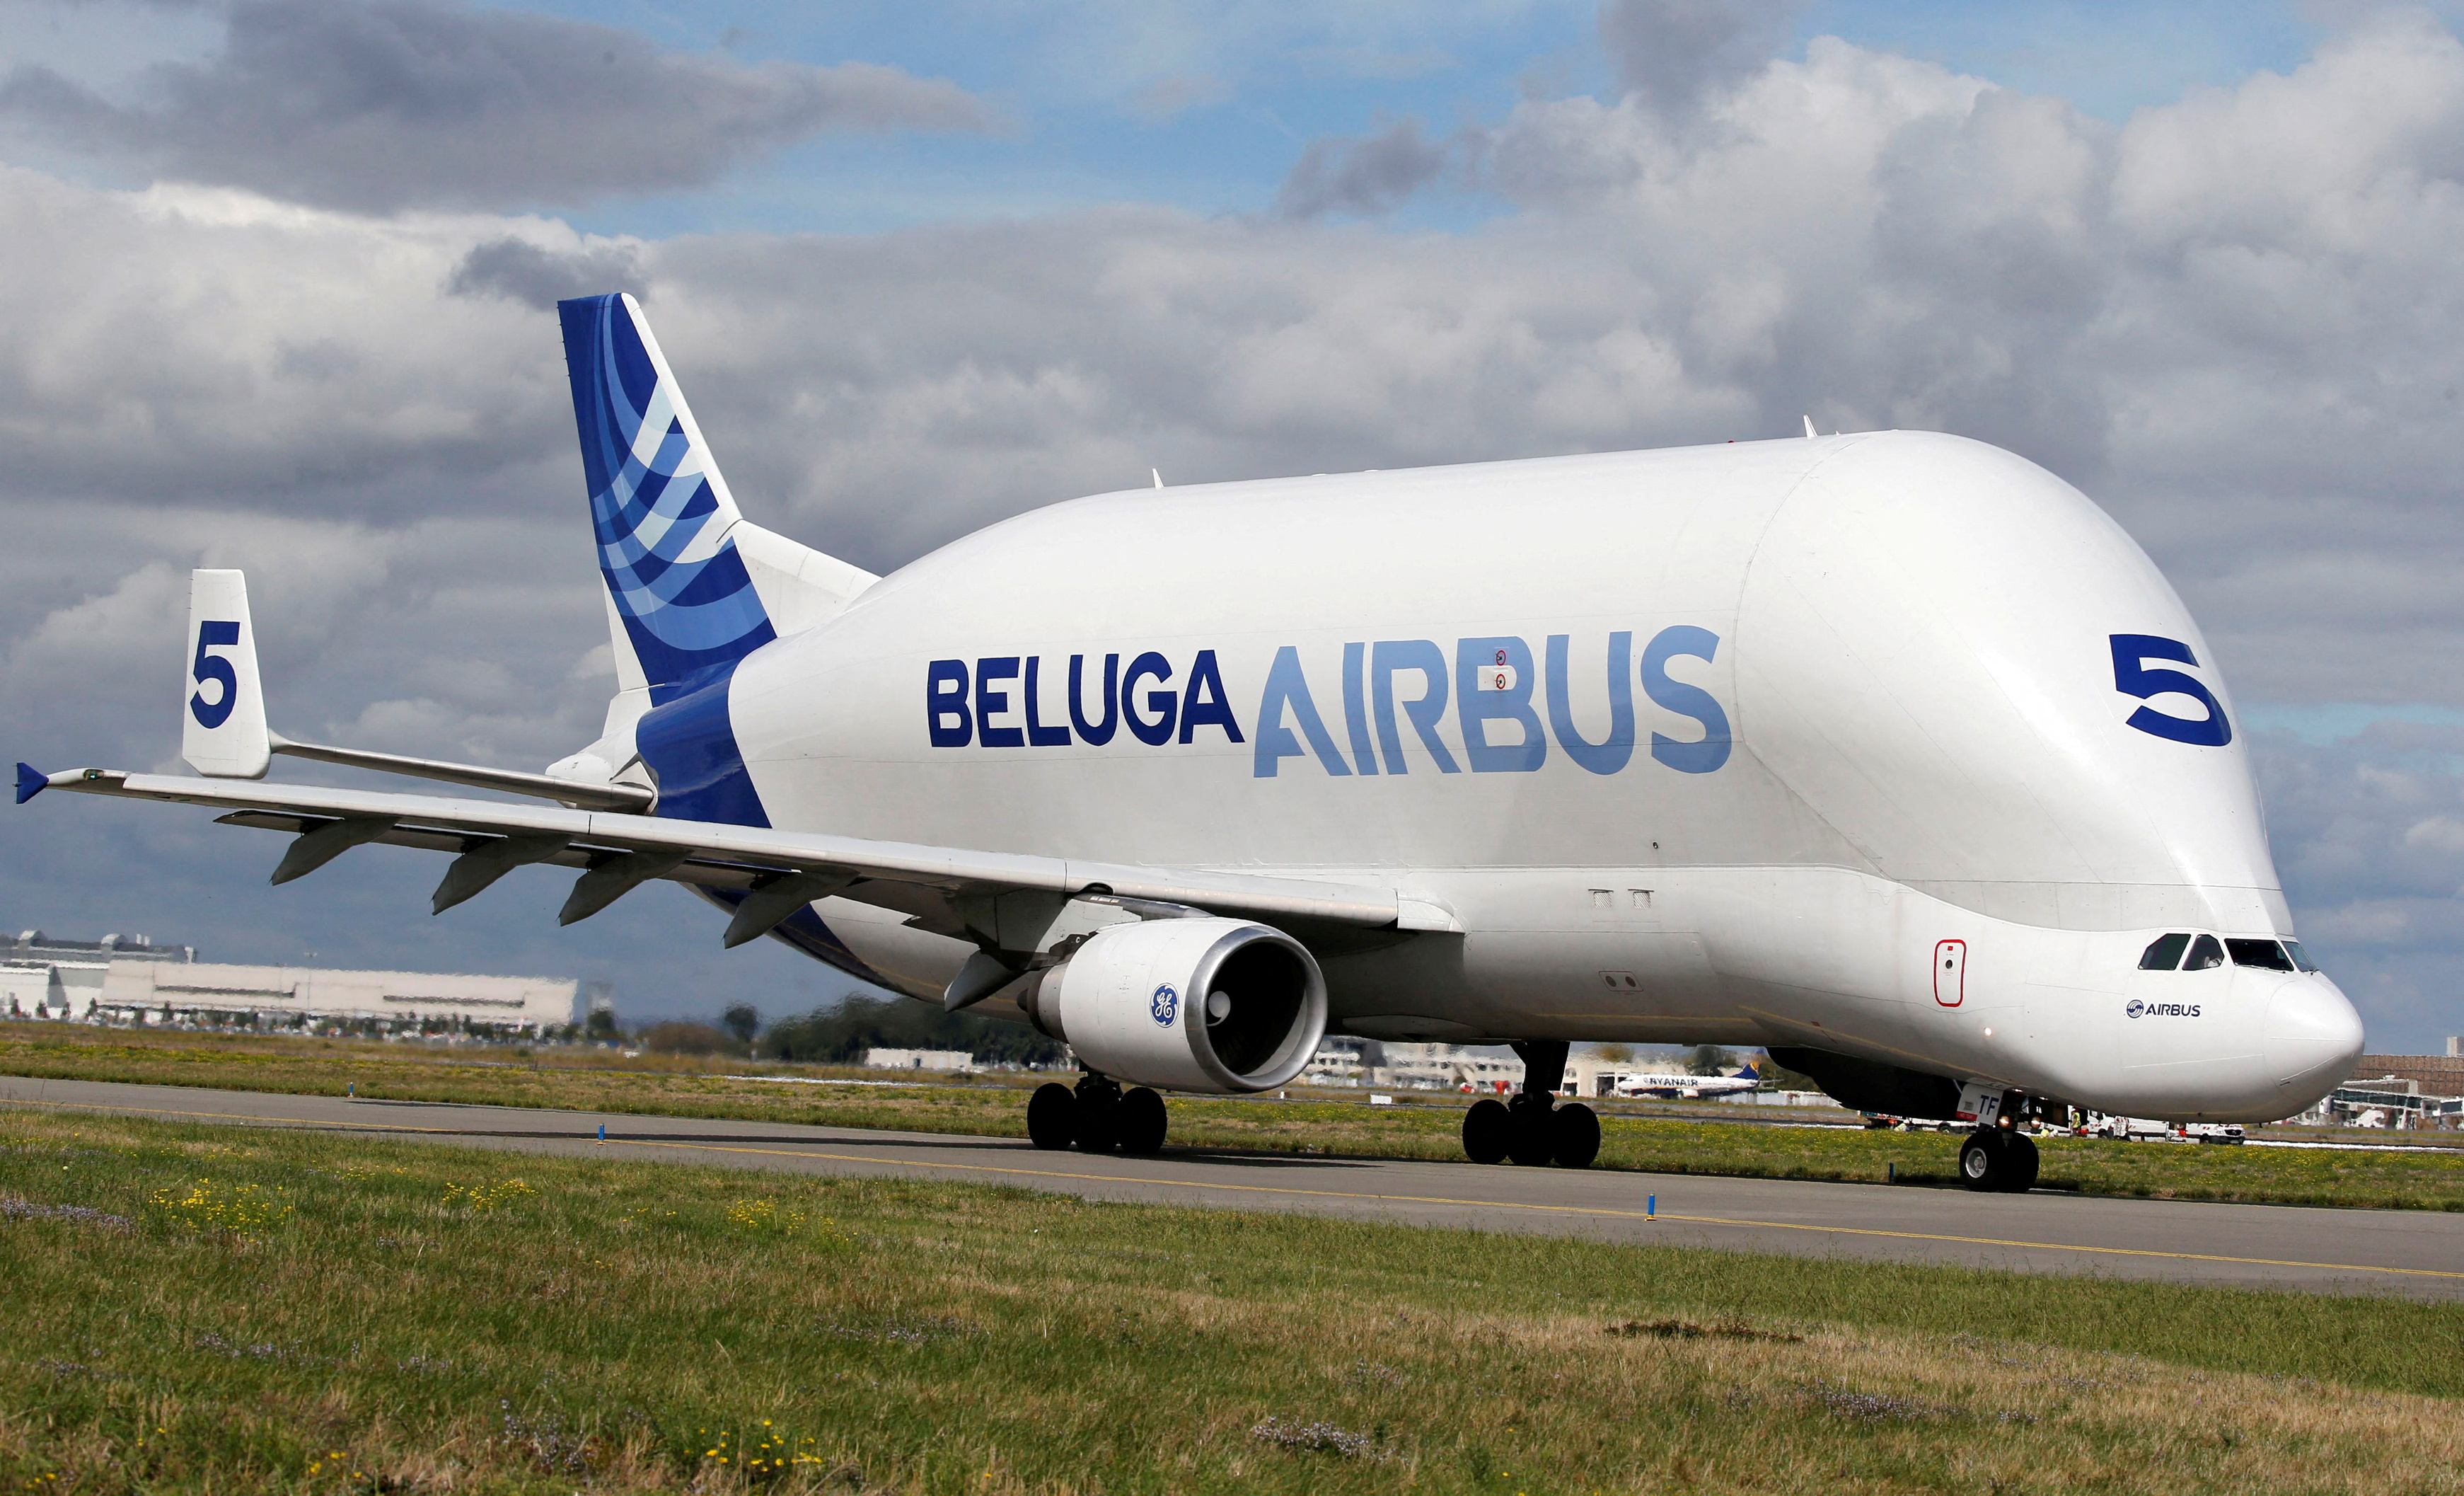 Airbus Beluga Wallpapers